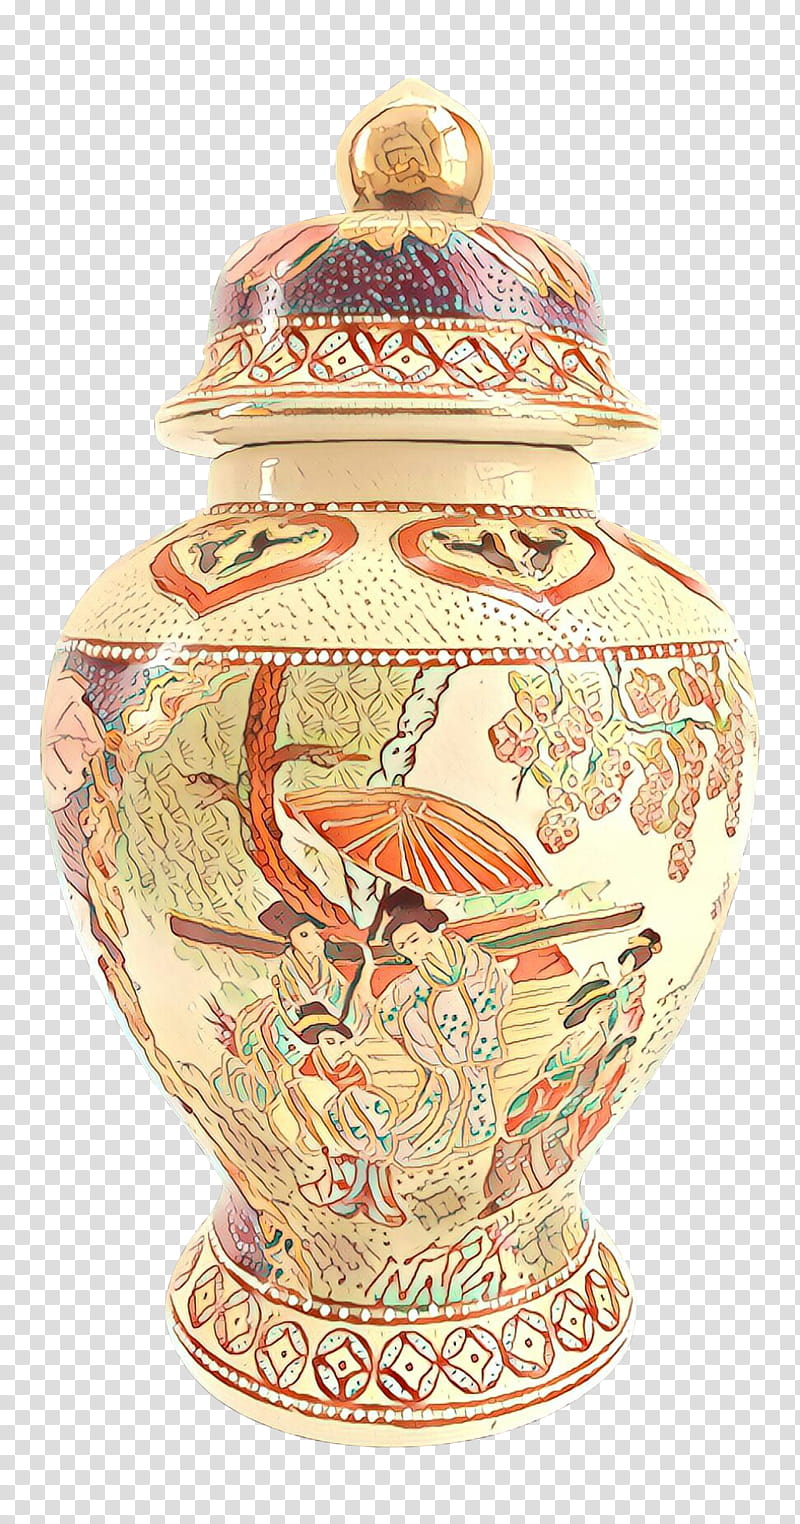 Vase Urn, Pottery, Porcelain, Ceramic, Artifact, Earthenware, Interior Design transparent background PNG clipart